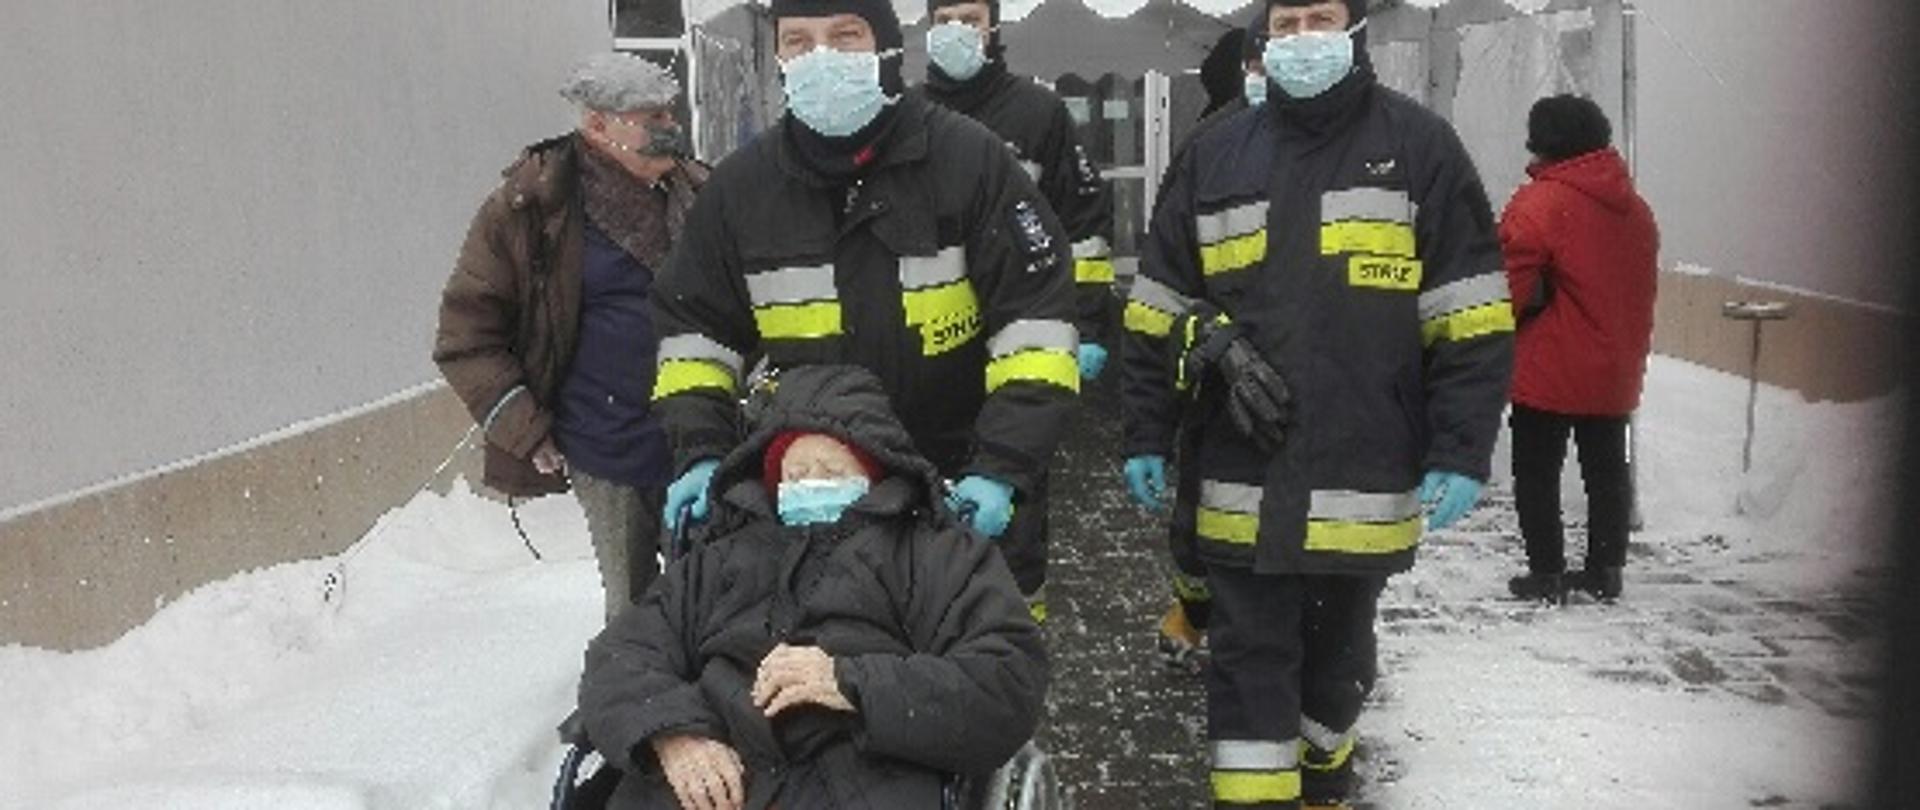 Obraz przedstawia strażaków w umundurowaniu specjalnym z założonymi maseczkami ochronnymi na twarzy. Strażacy prowadzą wózek inwalidzki ze starszą osobą. W tle budynek przychodni i zaśnieżony chodnik.